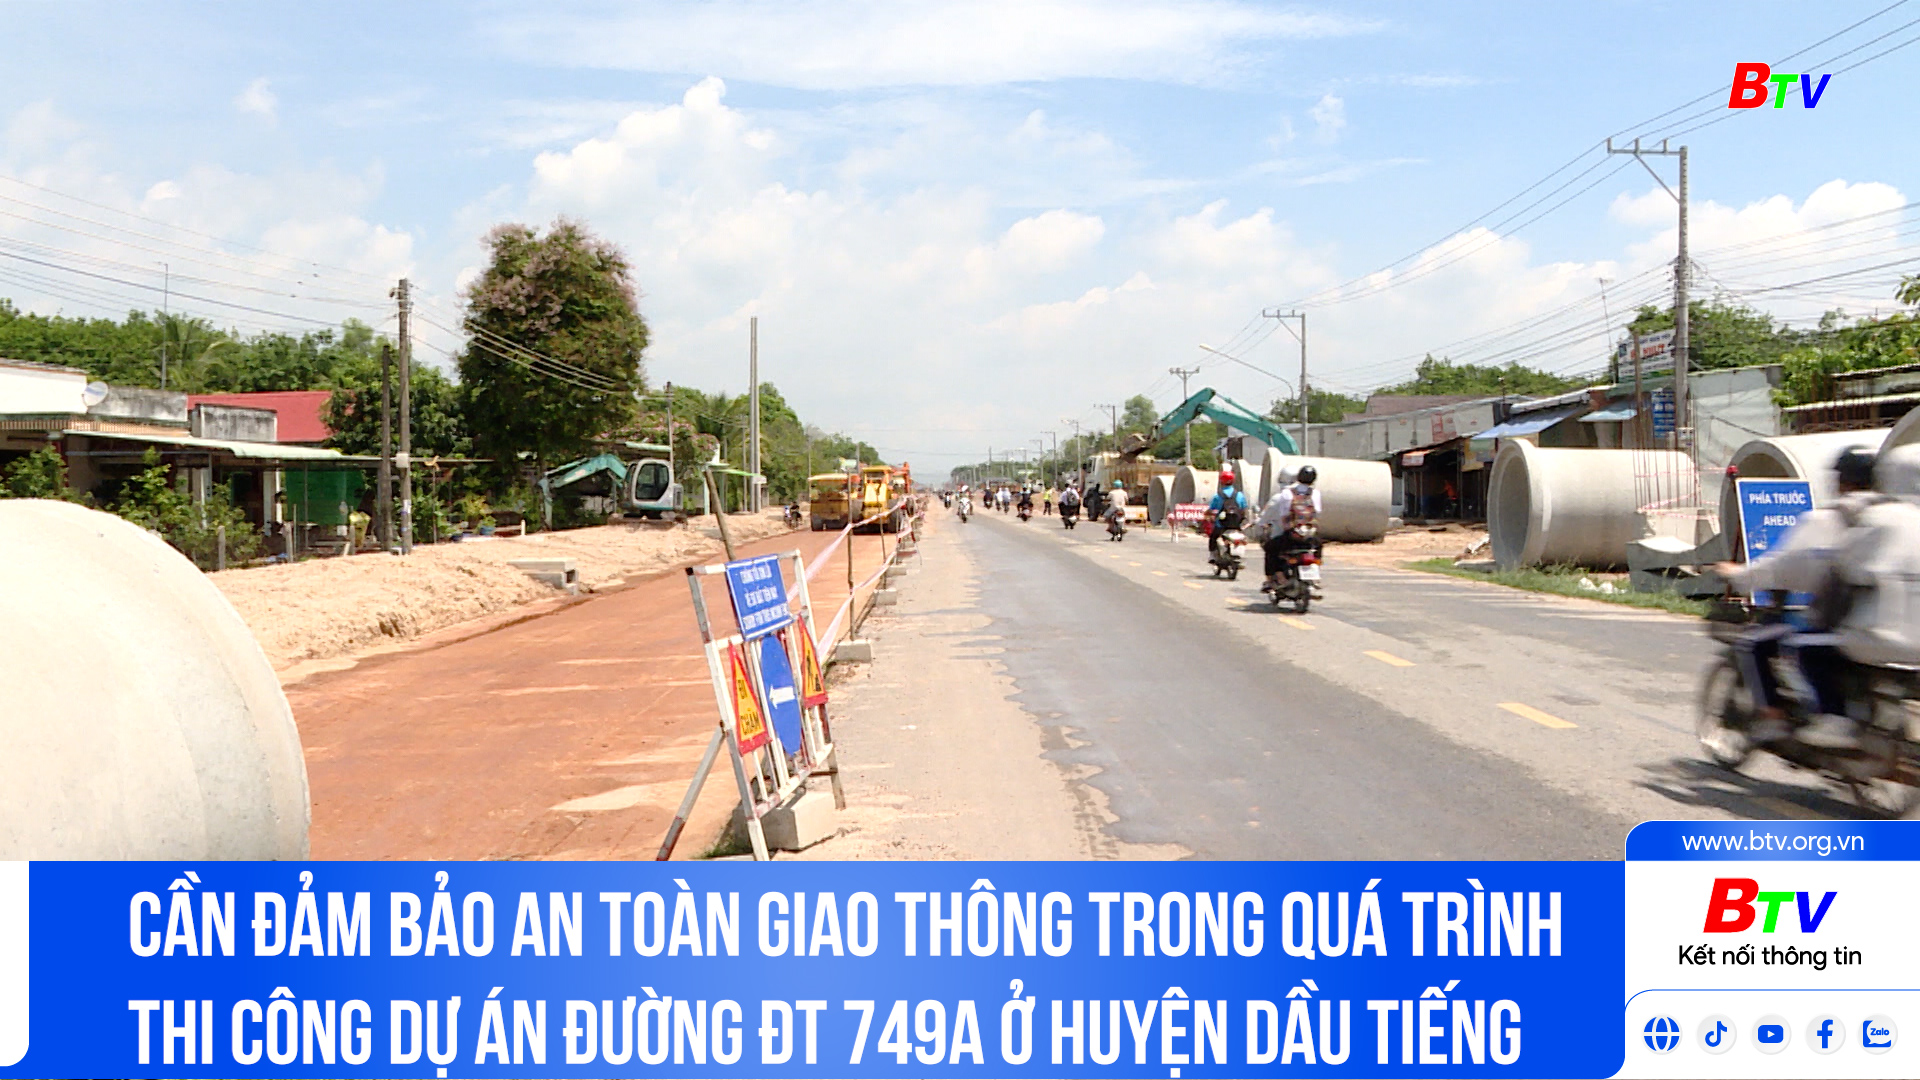 Đảm bảo an toàn giao thông trong quá trình thi công dự án đường ĐT 749A ở huyện Dầu Tiếng